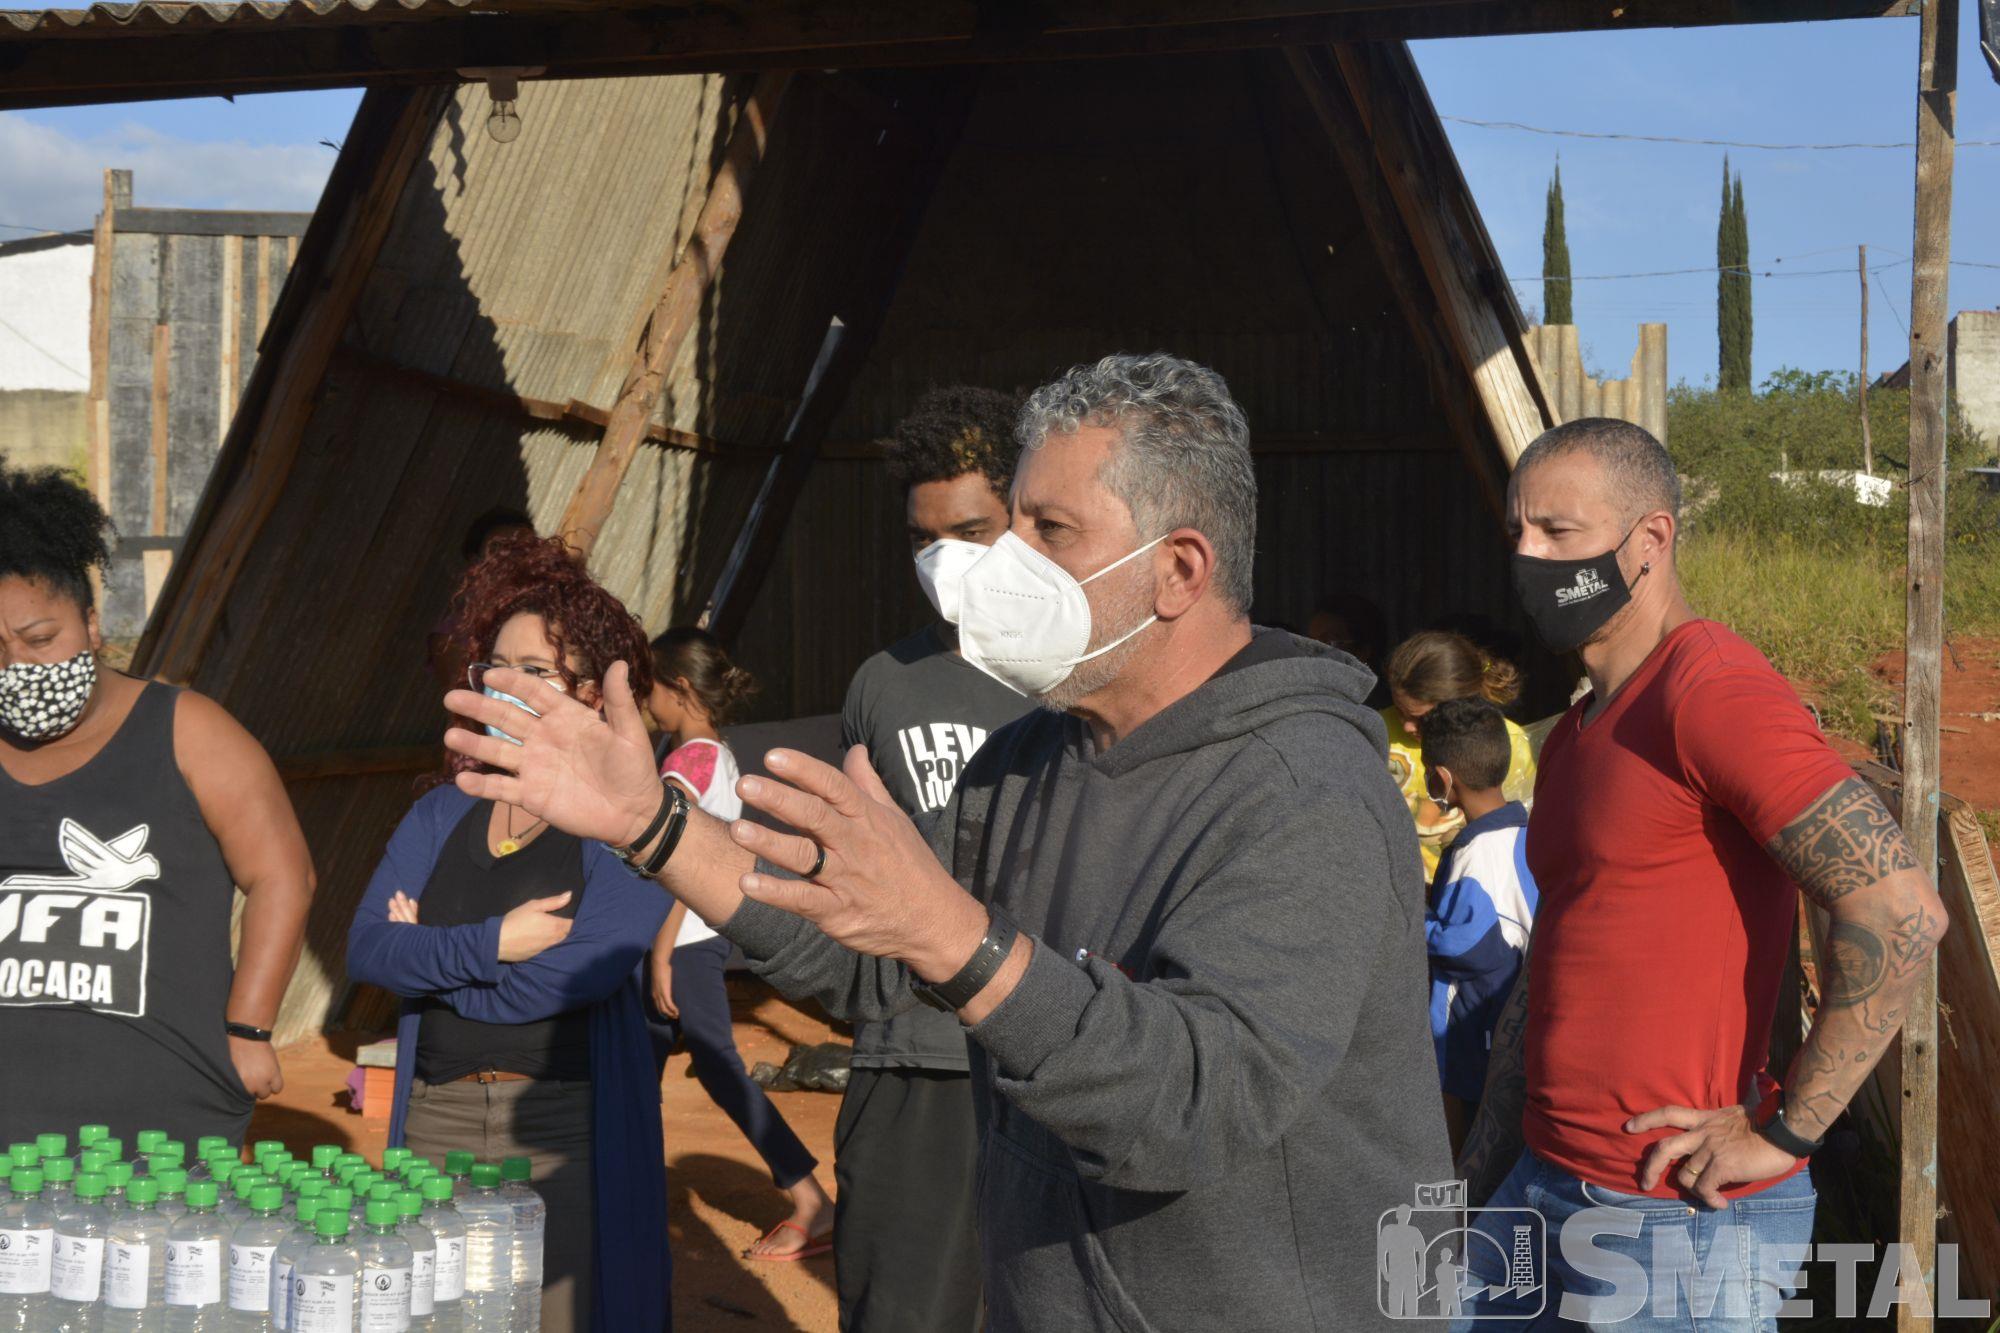 SMetal participa de doações de álcool em gel e máscaras